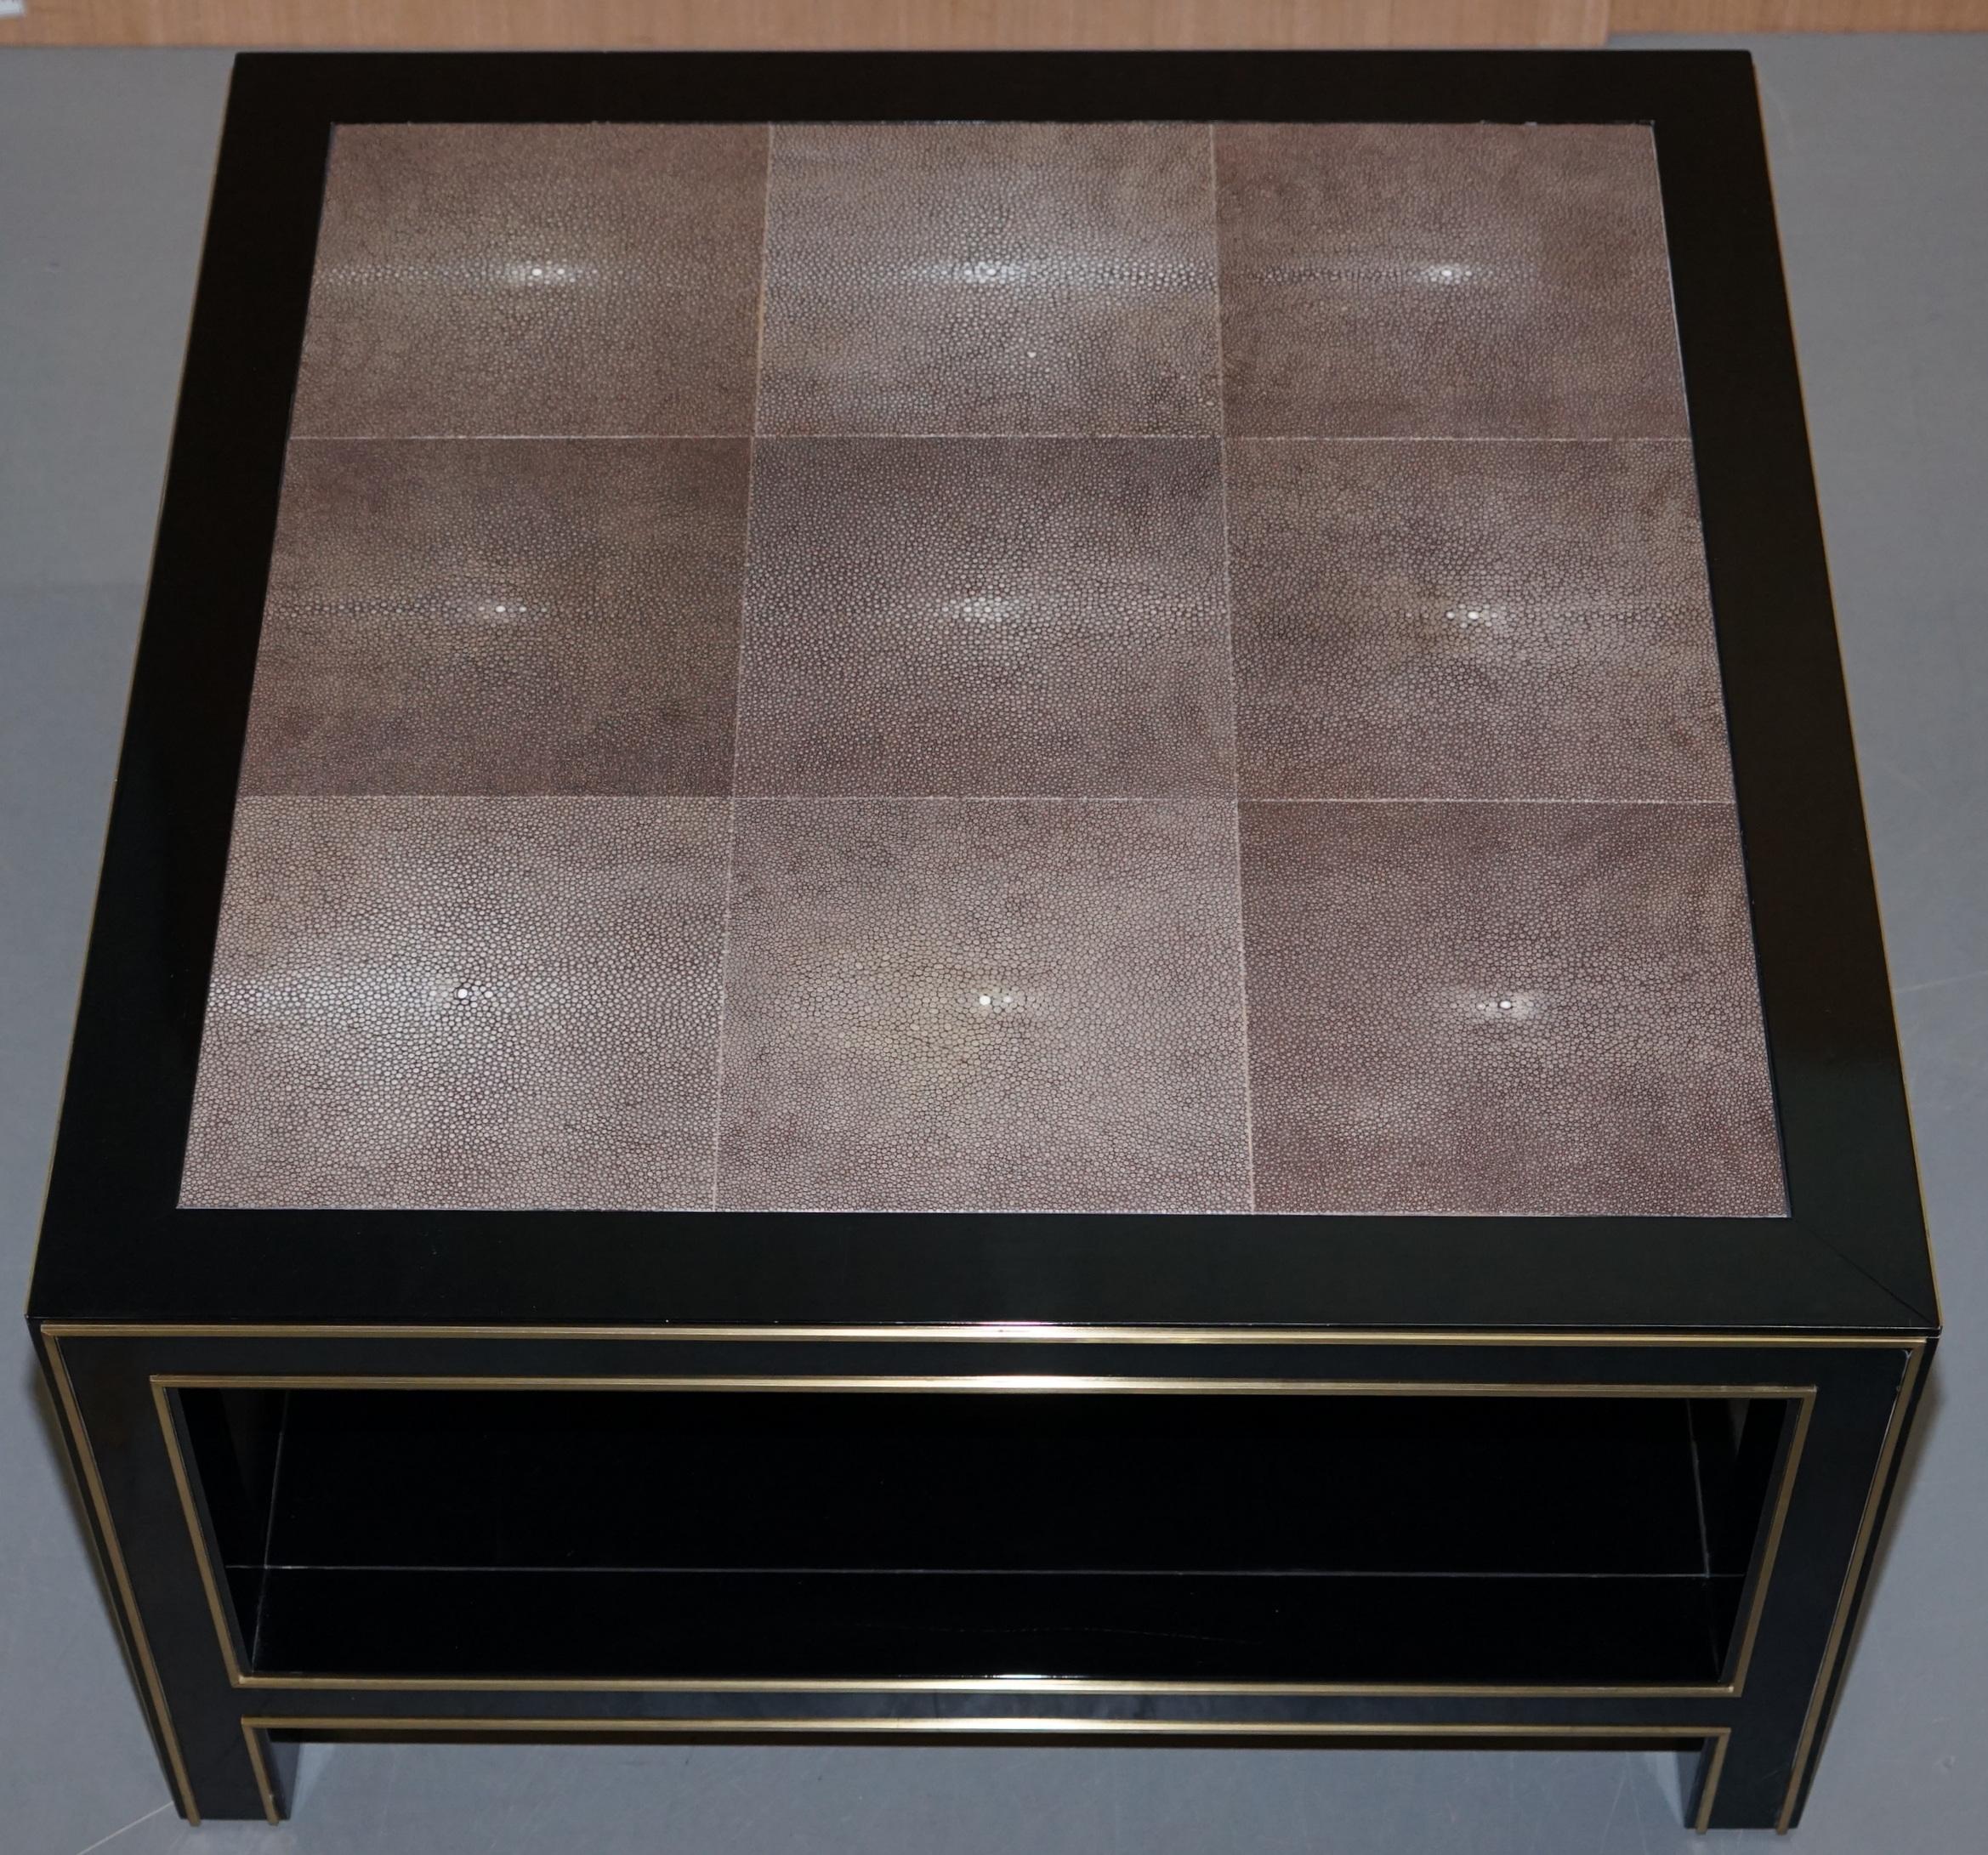 Wir freuen uns, dieses Paar originaler schwarz lackierter Shagreen-Tische mit vergoldeten Metalldetails zum Verkauf anbieten zu können (UVP £18,000). 

Es handelt sich um ein sehr solides Tischpaar. Shagreen ist eine Haifischhaut oder Rochenhaut